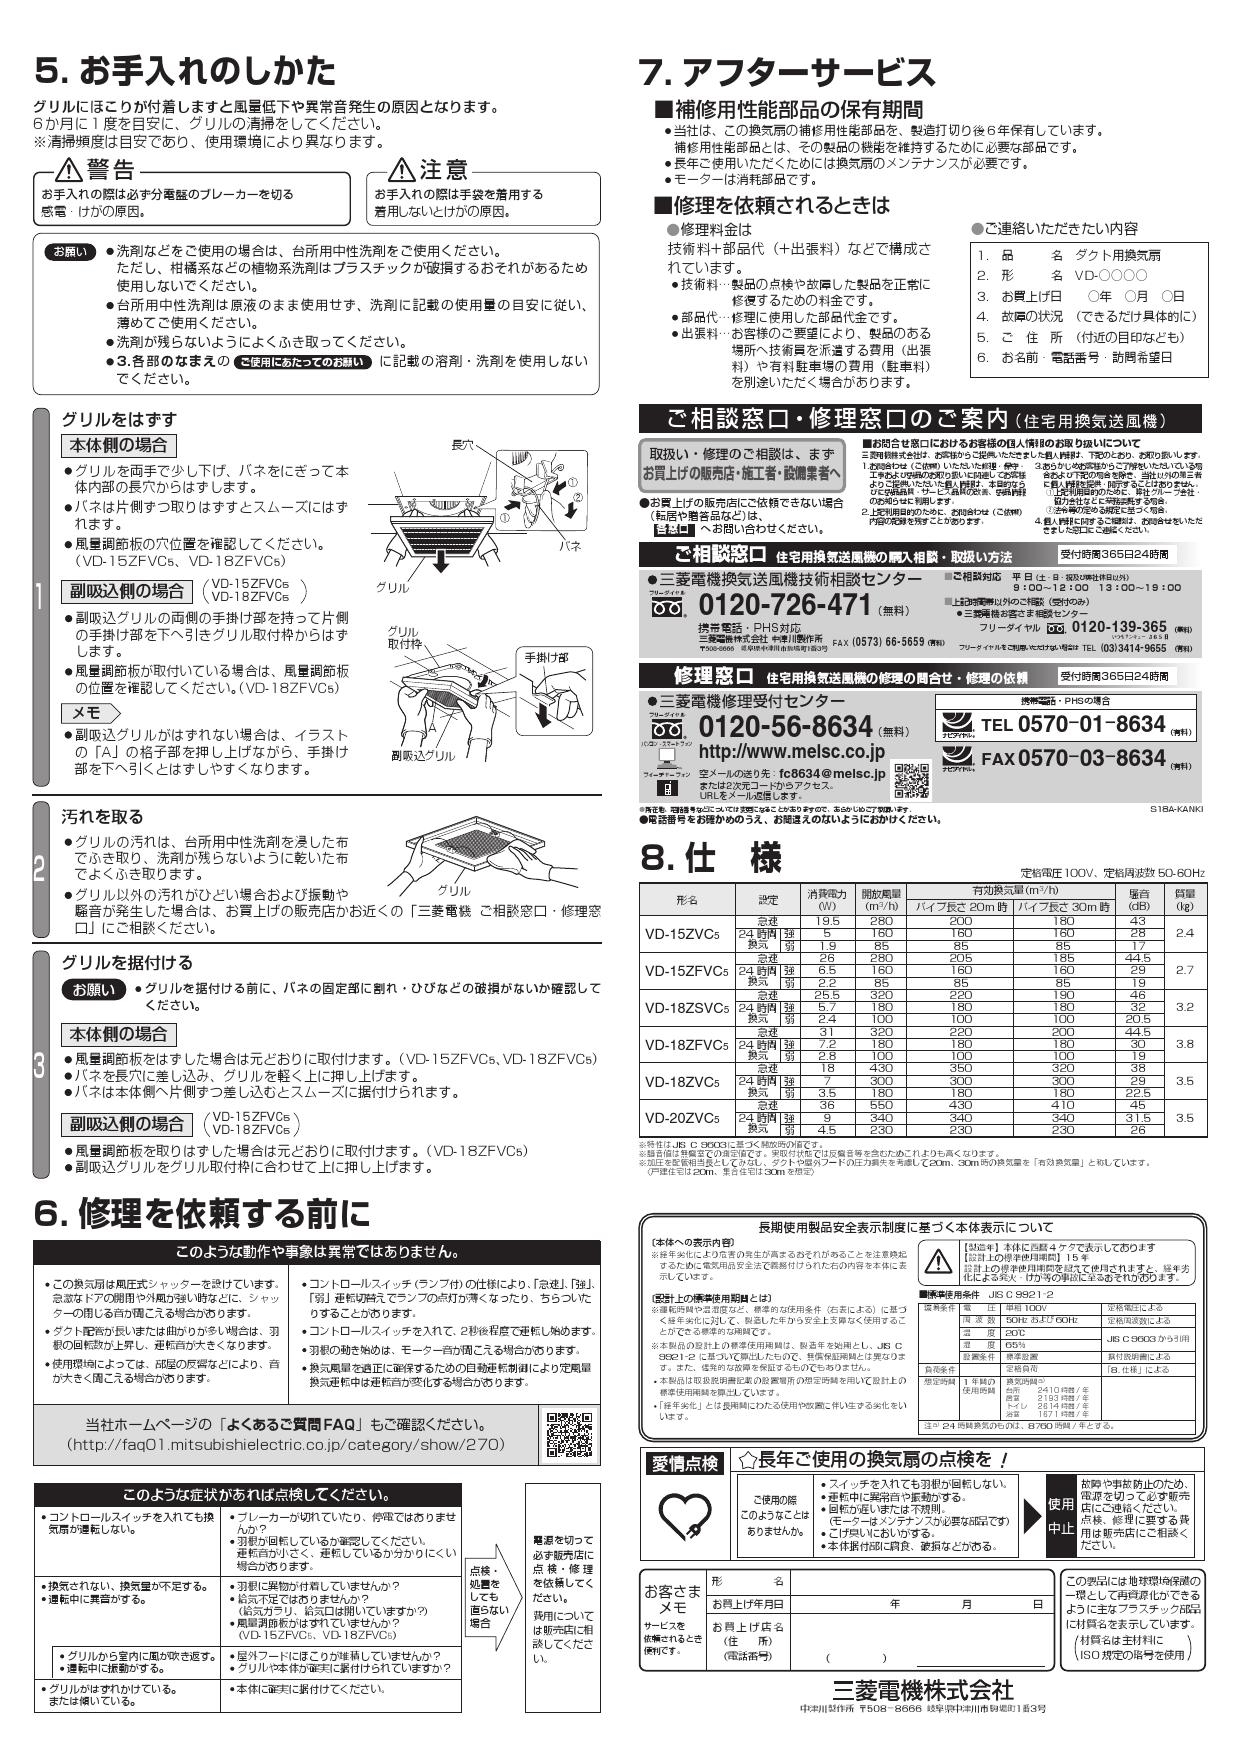 VD-18ZVC5 三菱 サニタリー用 ダクト用 換気扇/srm｜空調設備